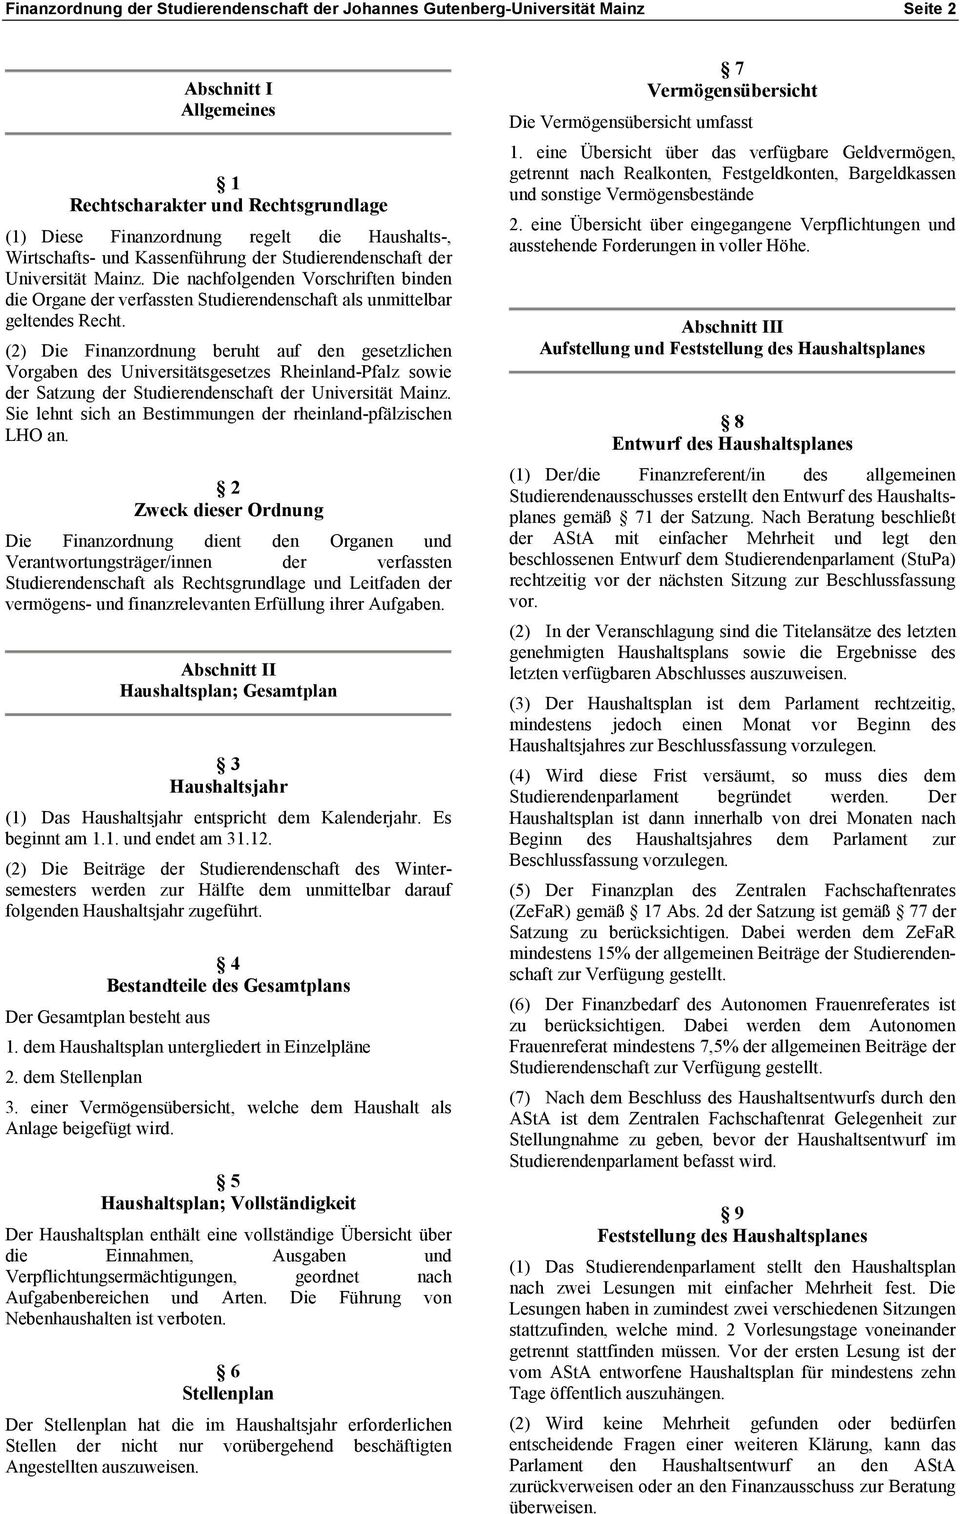 (2) Die Finanzordnung beruht auf den gesetzlichen Vorgaben des Universitätsgesetzes Rheinland-Pfalz sowie der Satzung der Studierendenschaft der Universität Mainz.